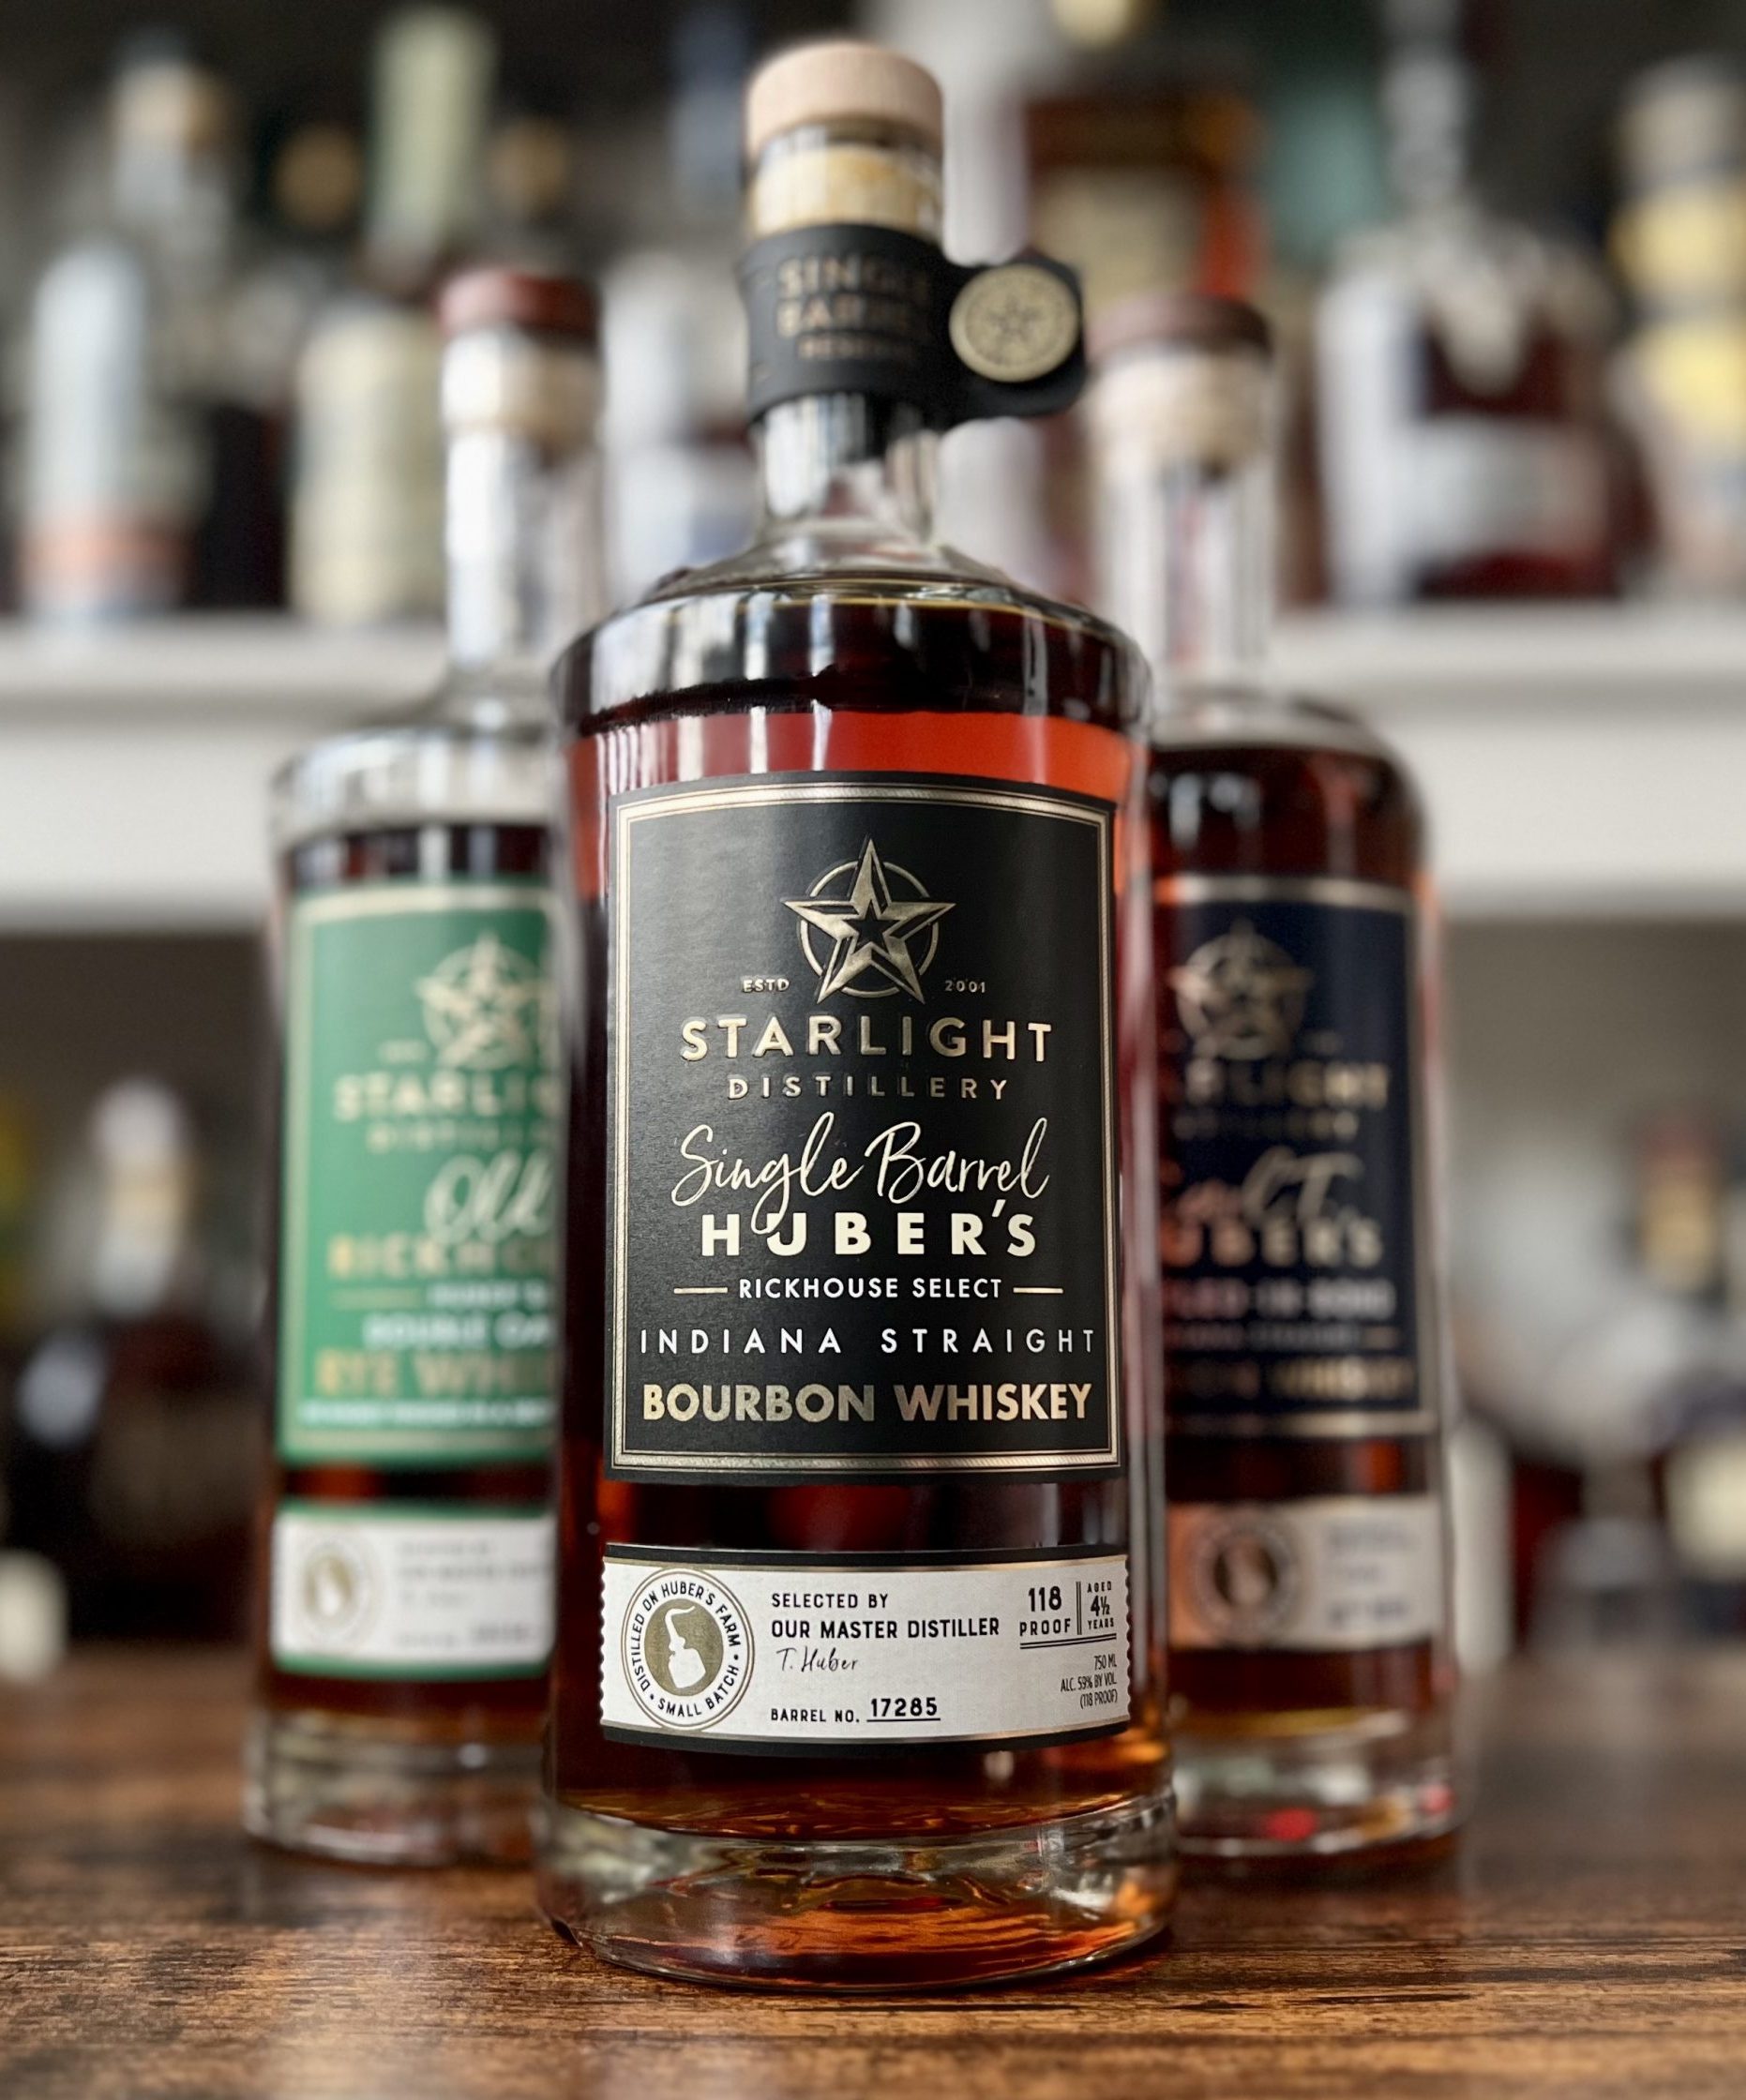 Starlight Distillery Carl T. Huber's Bourbon Whiskey Bottled-in-Bond